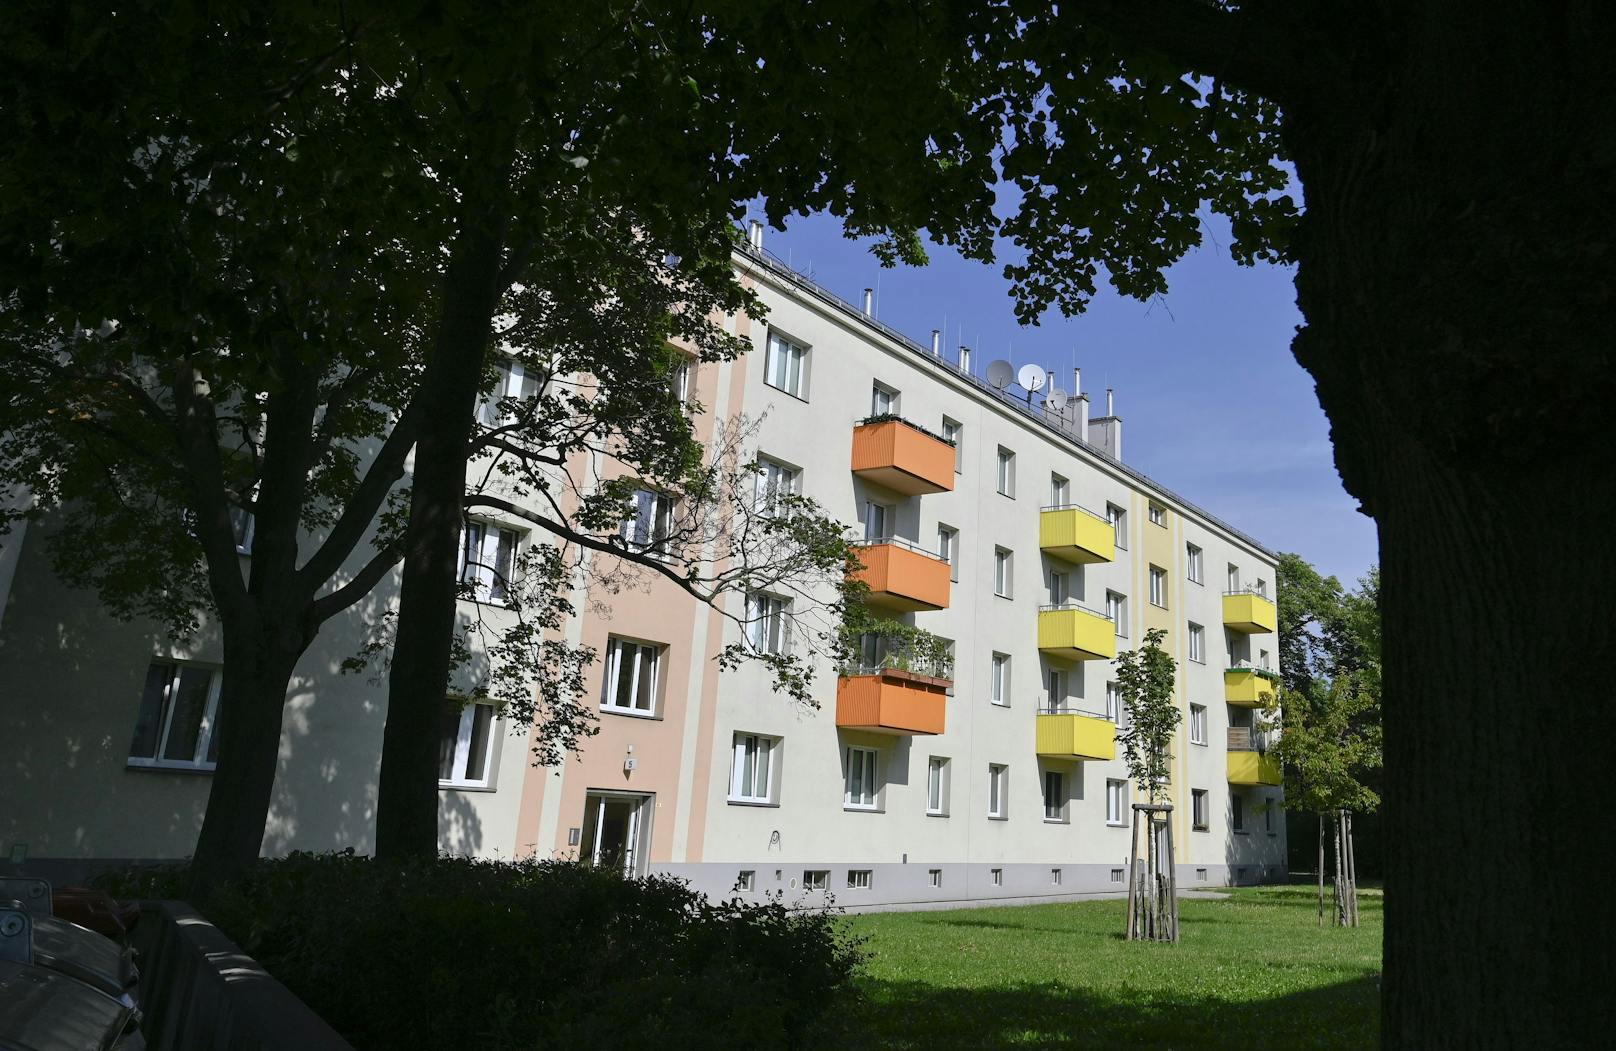 Ein 1-jähriger Bub ist am Sonntagabend nach einem Fenstersturz in Wien-Floridsdorf gestorben.